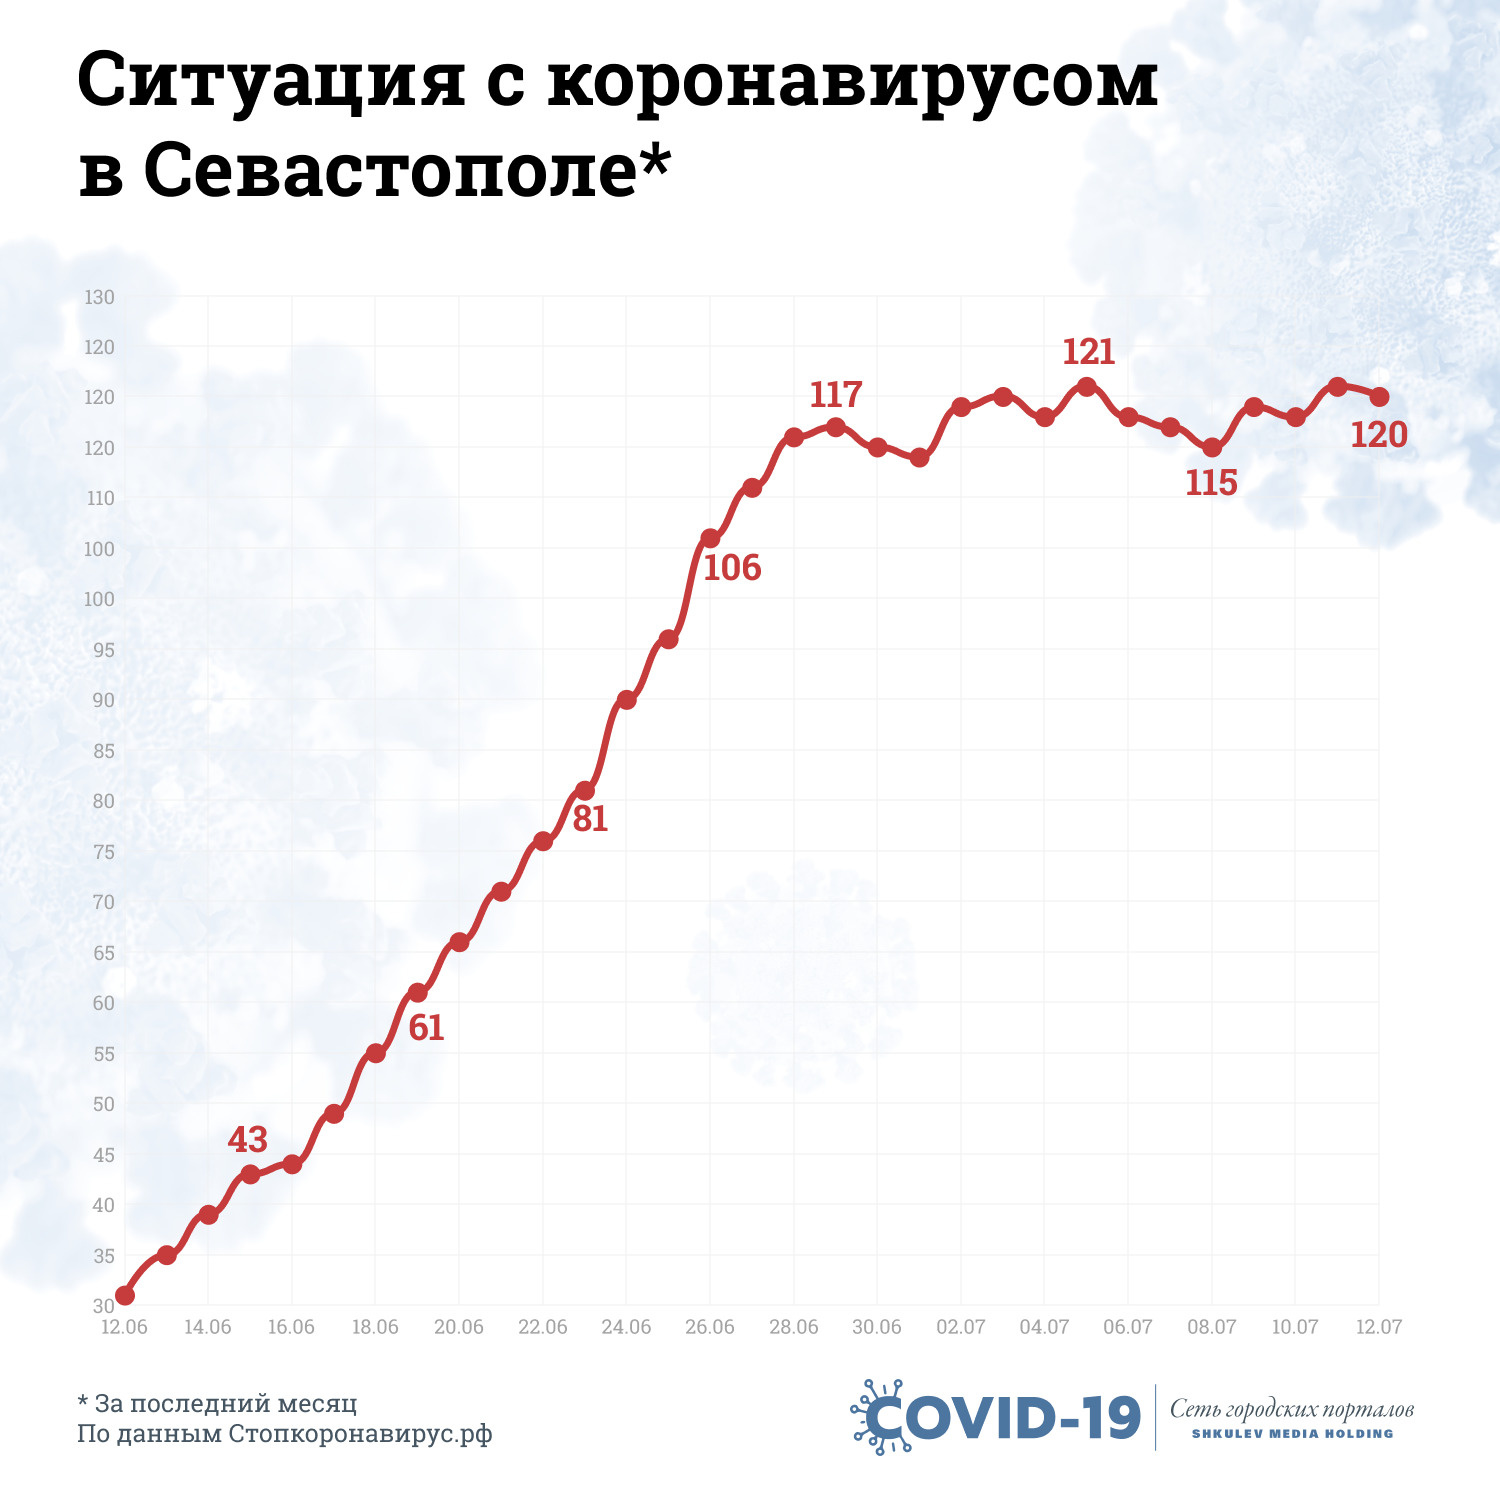 В Севастополе был резкий рост заболеваемости до конца июня, а сейчас держится примерно на одном уровне